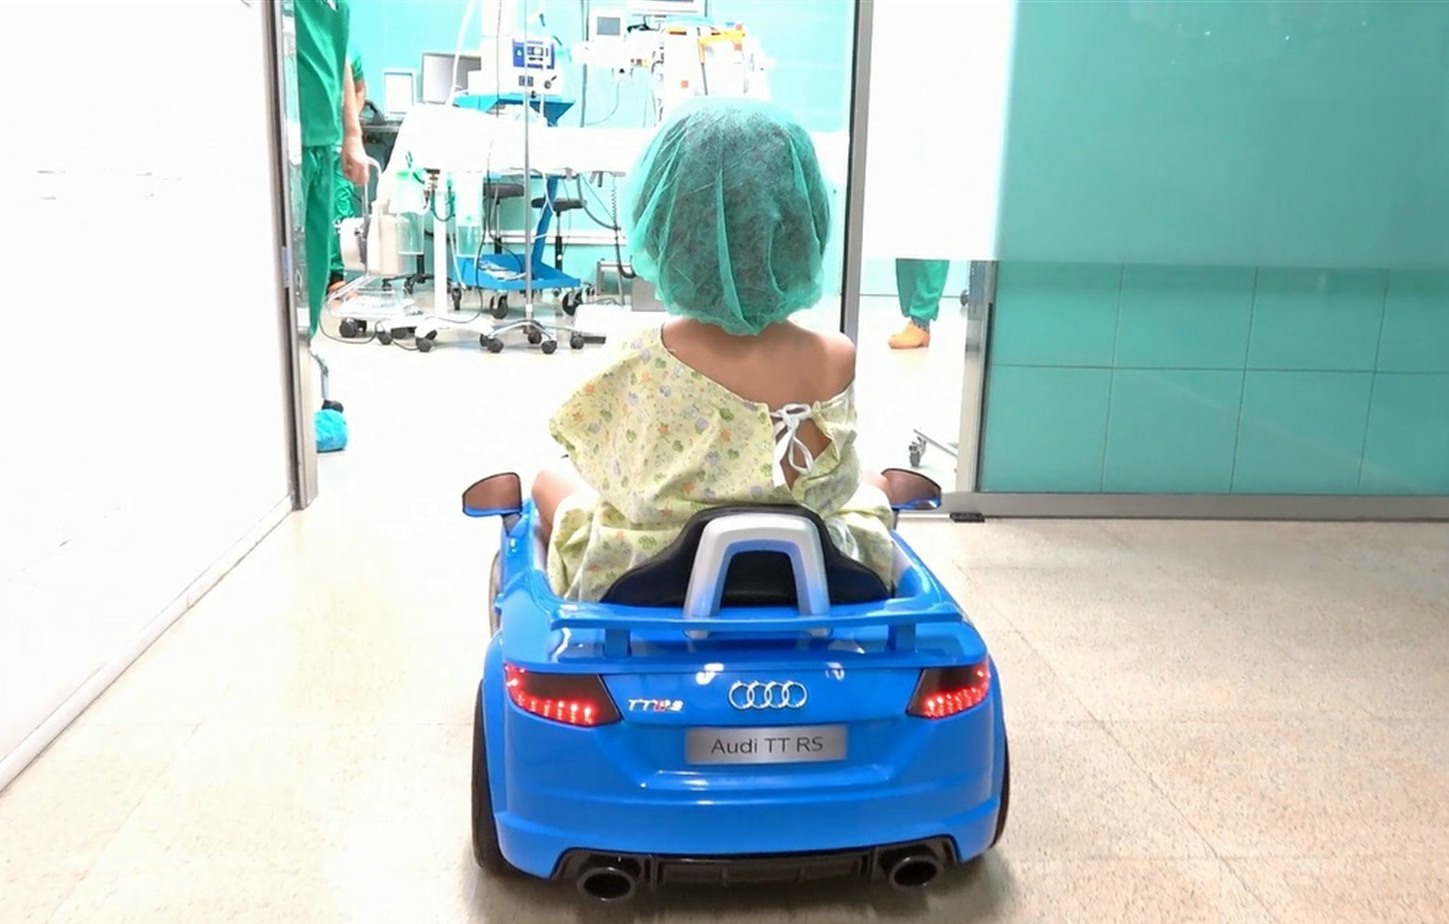 El Sumario - El Hospital Parc Taulí de Sabadell traslada a los niños hasta el quirófano subidos en un auto para que las risas puedan más que los nervios